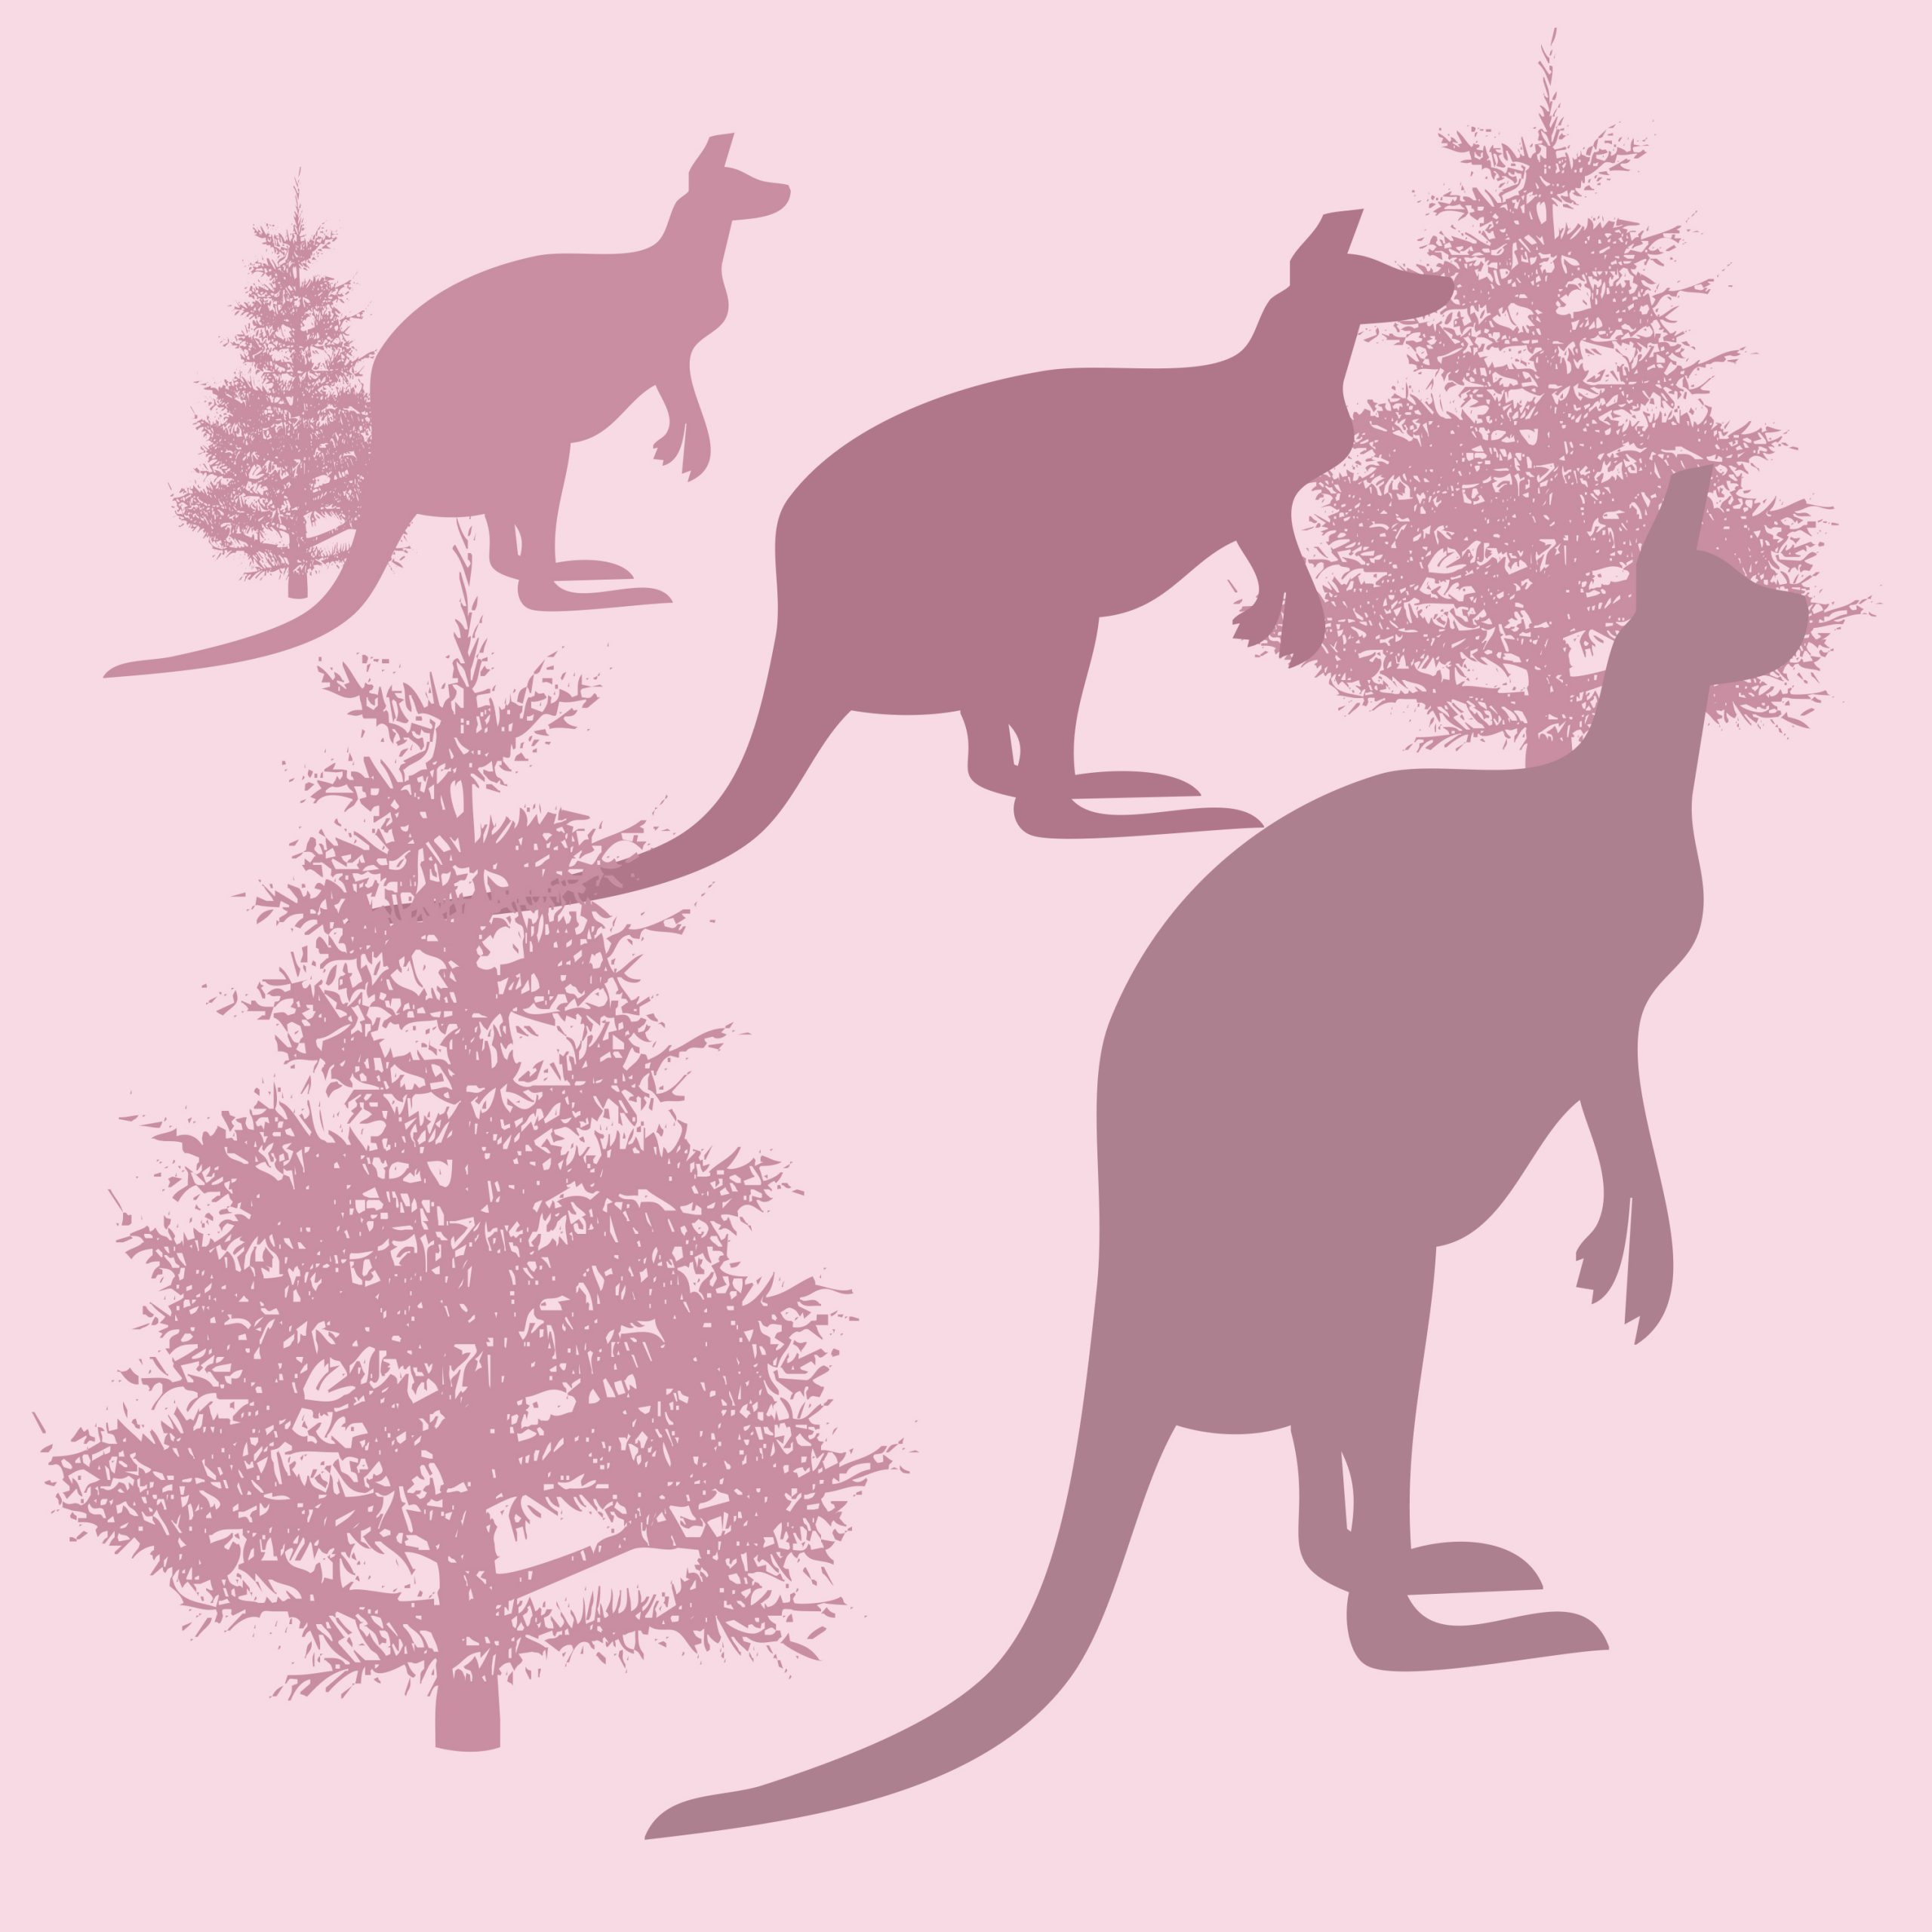 Kangaroo illustration